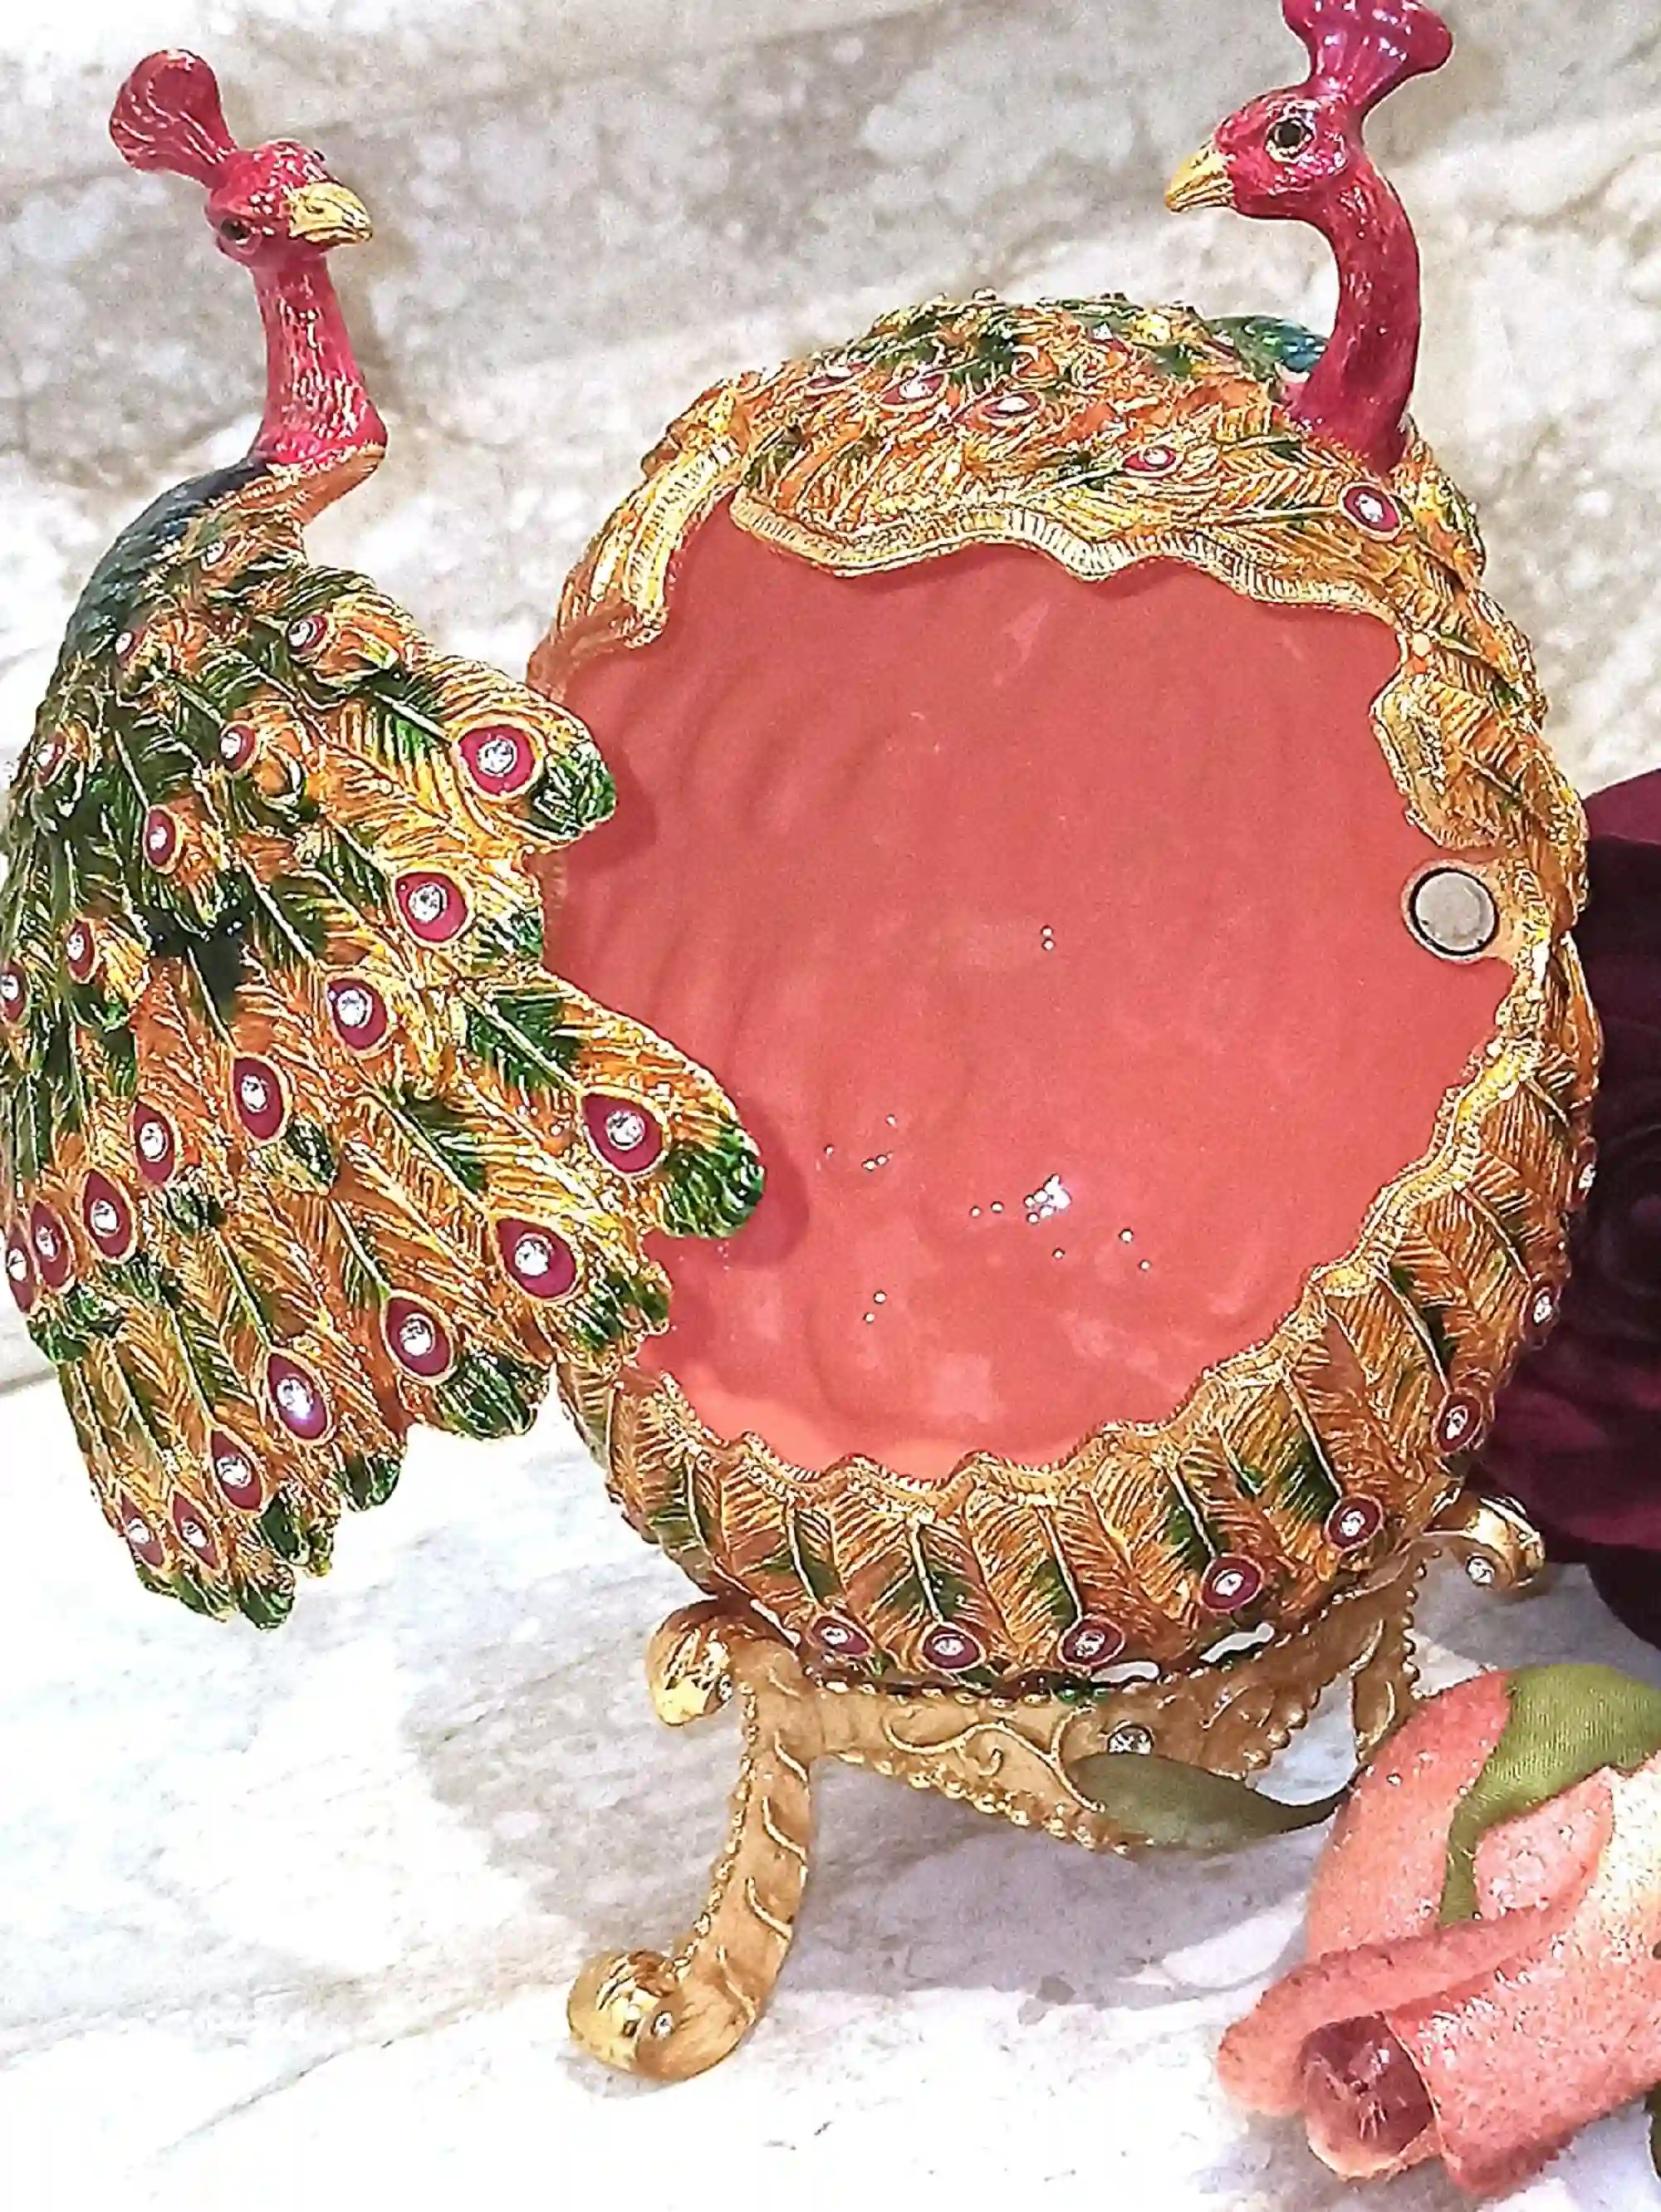 Large Easter Egg Ornament Trinket Gift for Couple Faberge Love Peacock 24k GOLD HANDSET 160 Swarovski Diamond & Ruby Bracelet DESIGNER Egg 